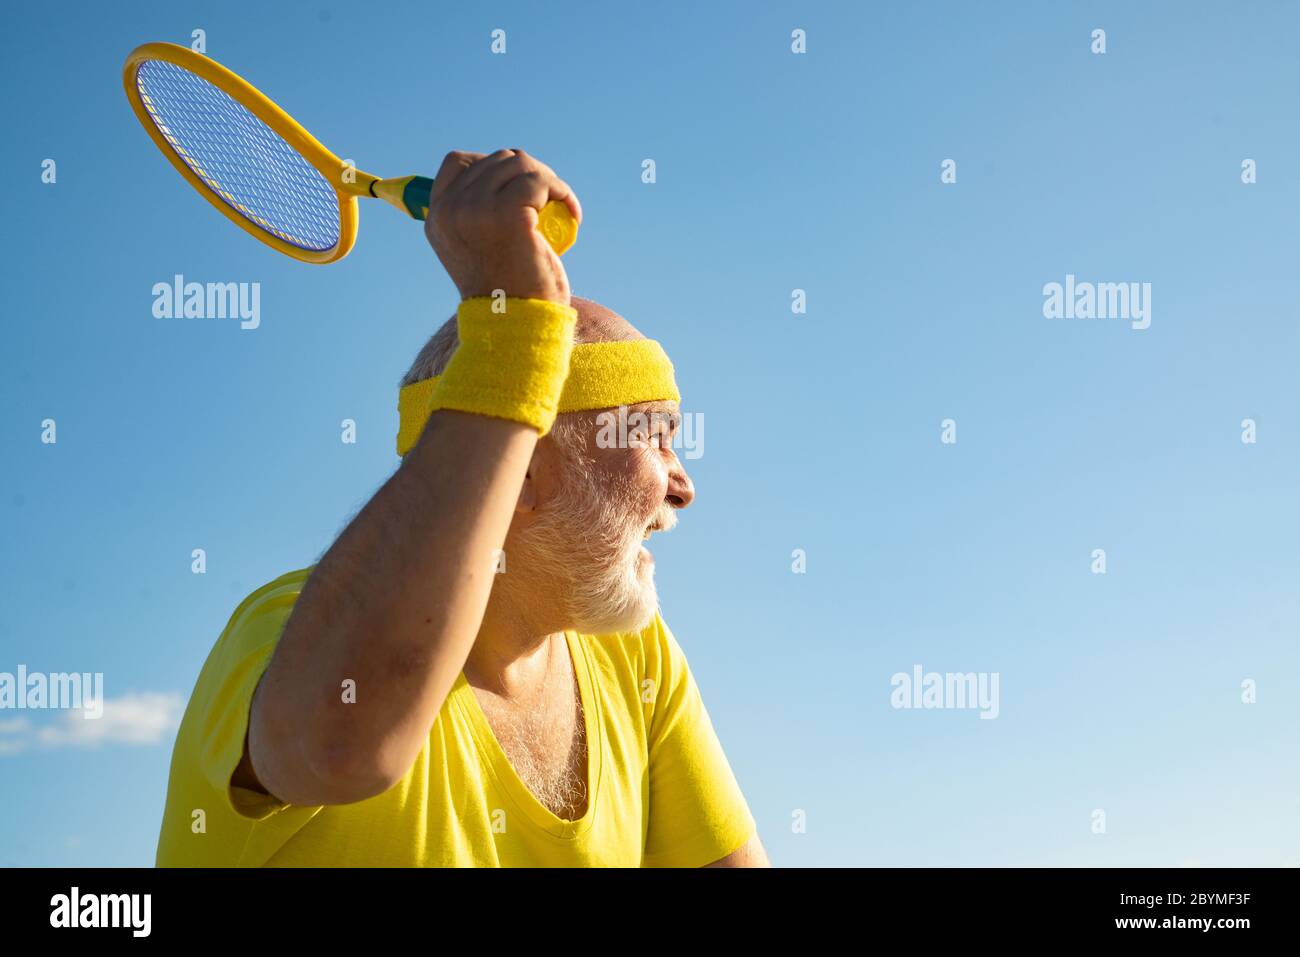 Tennis macht Spaß. Senior man Tennis Spieler servieren. Gesund und Sport.  Sport und Altersvorsorge Stockfotografie - Alamy